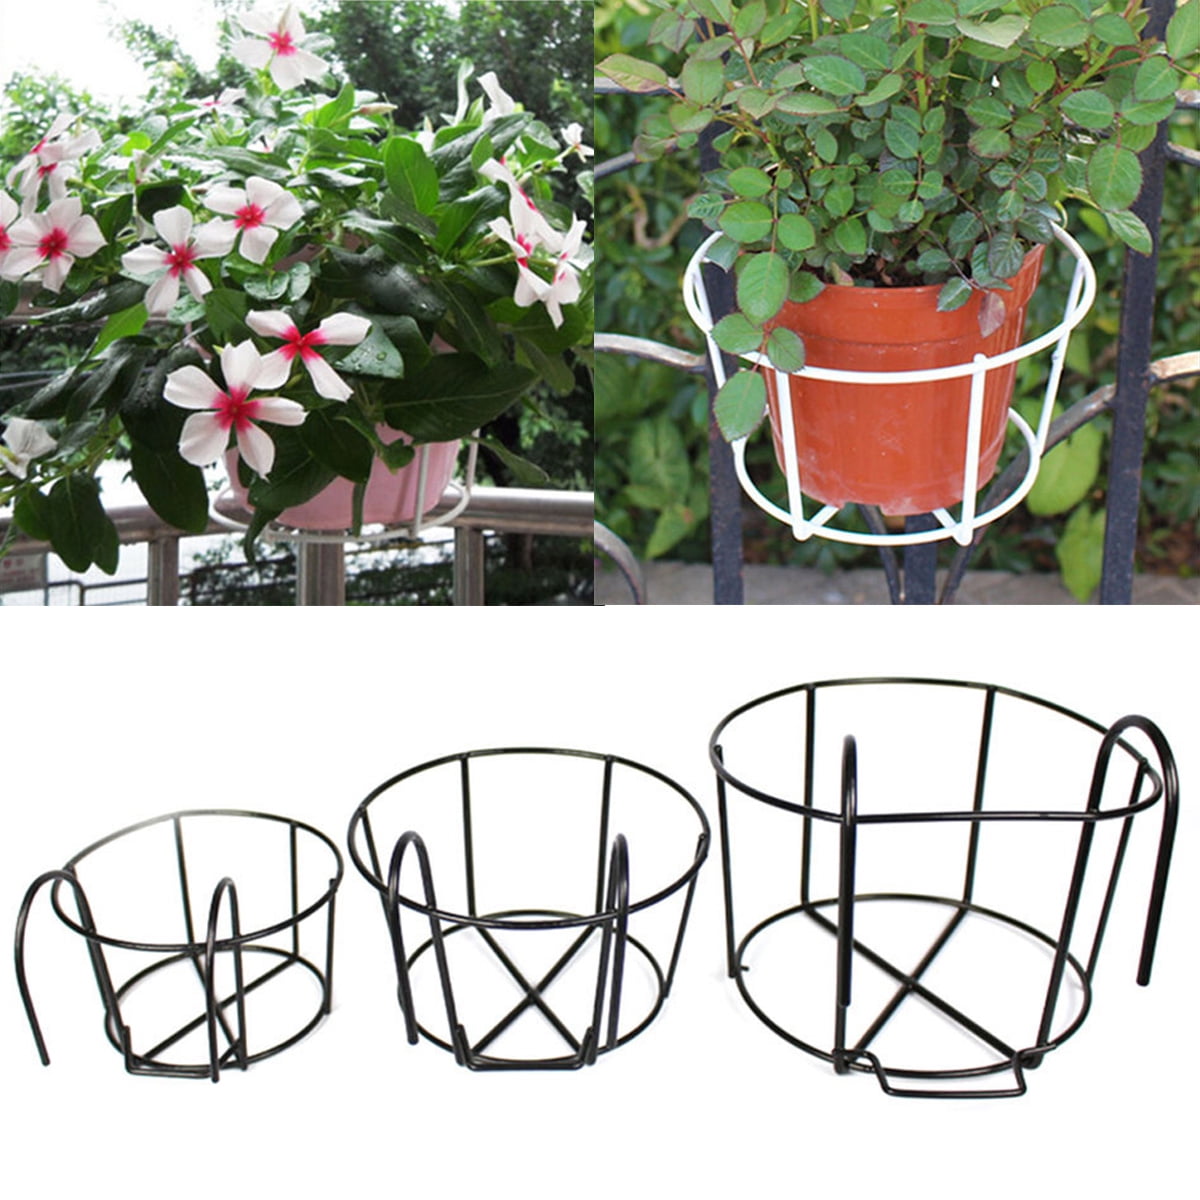 20 Pcs Hanger Orchid Wire Hanging Plants Flower Pot Replacement Garden 4 Leg 30" 